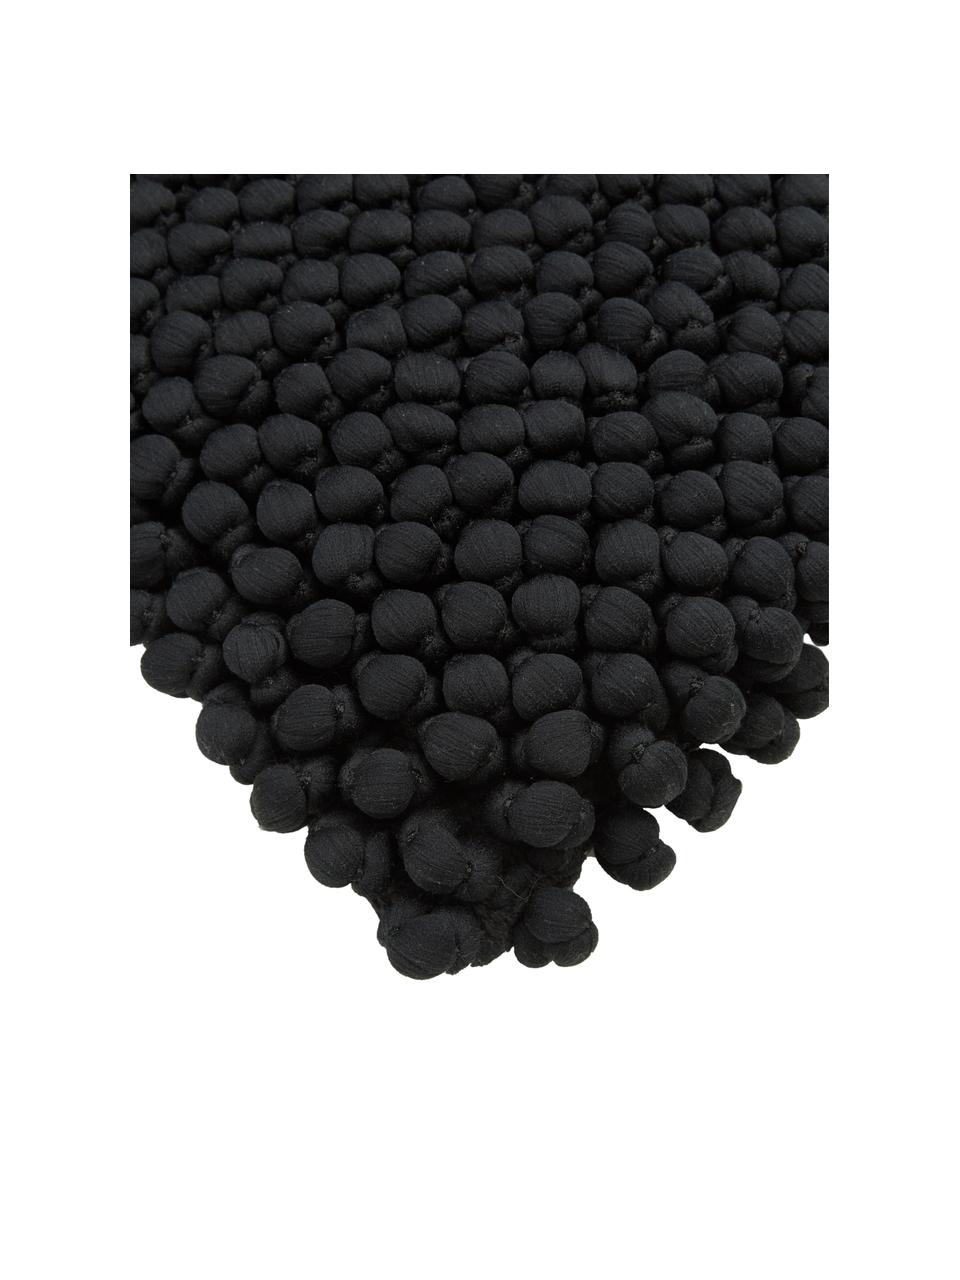 Kussenhoes Iona in zwart, Zwart, 45 x 45 cm